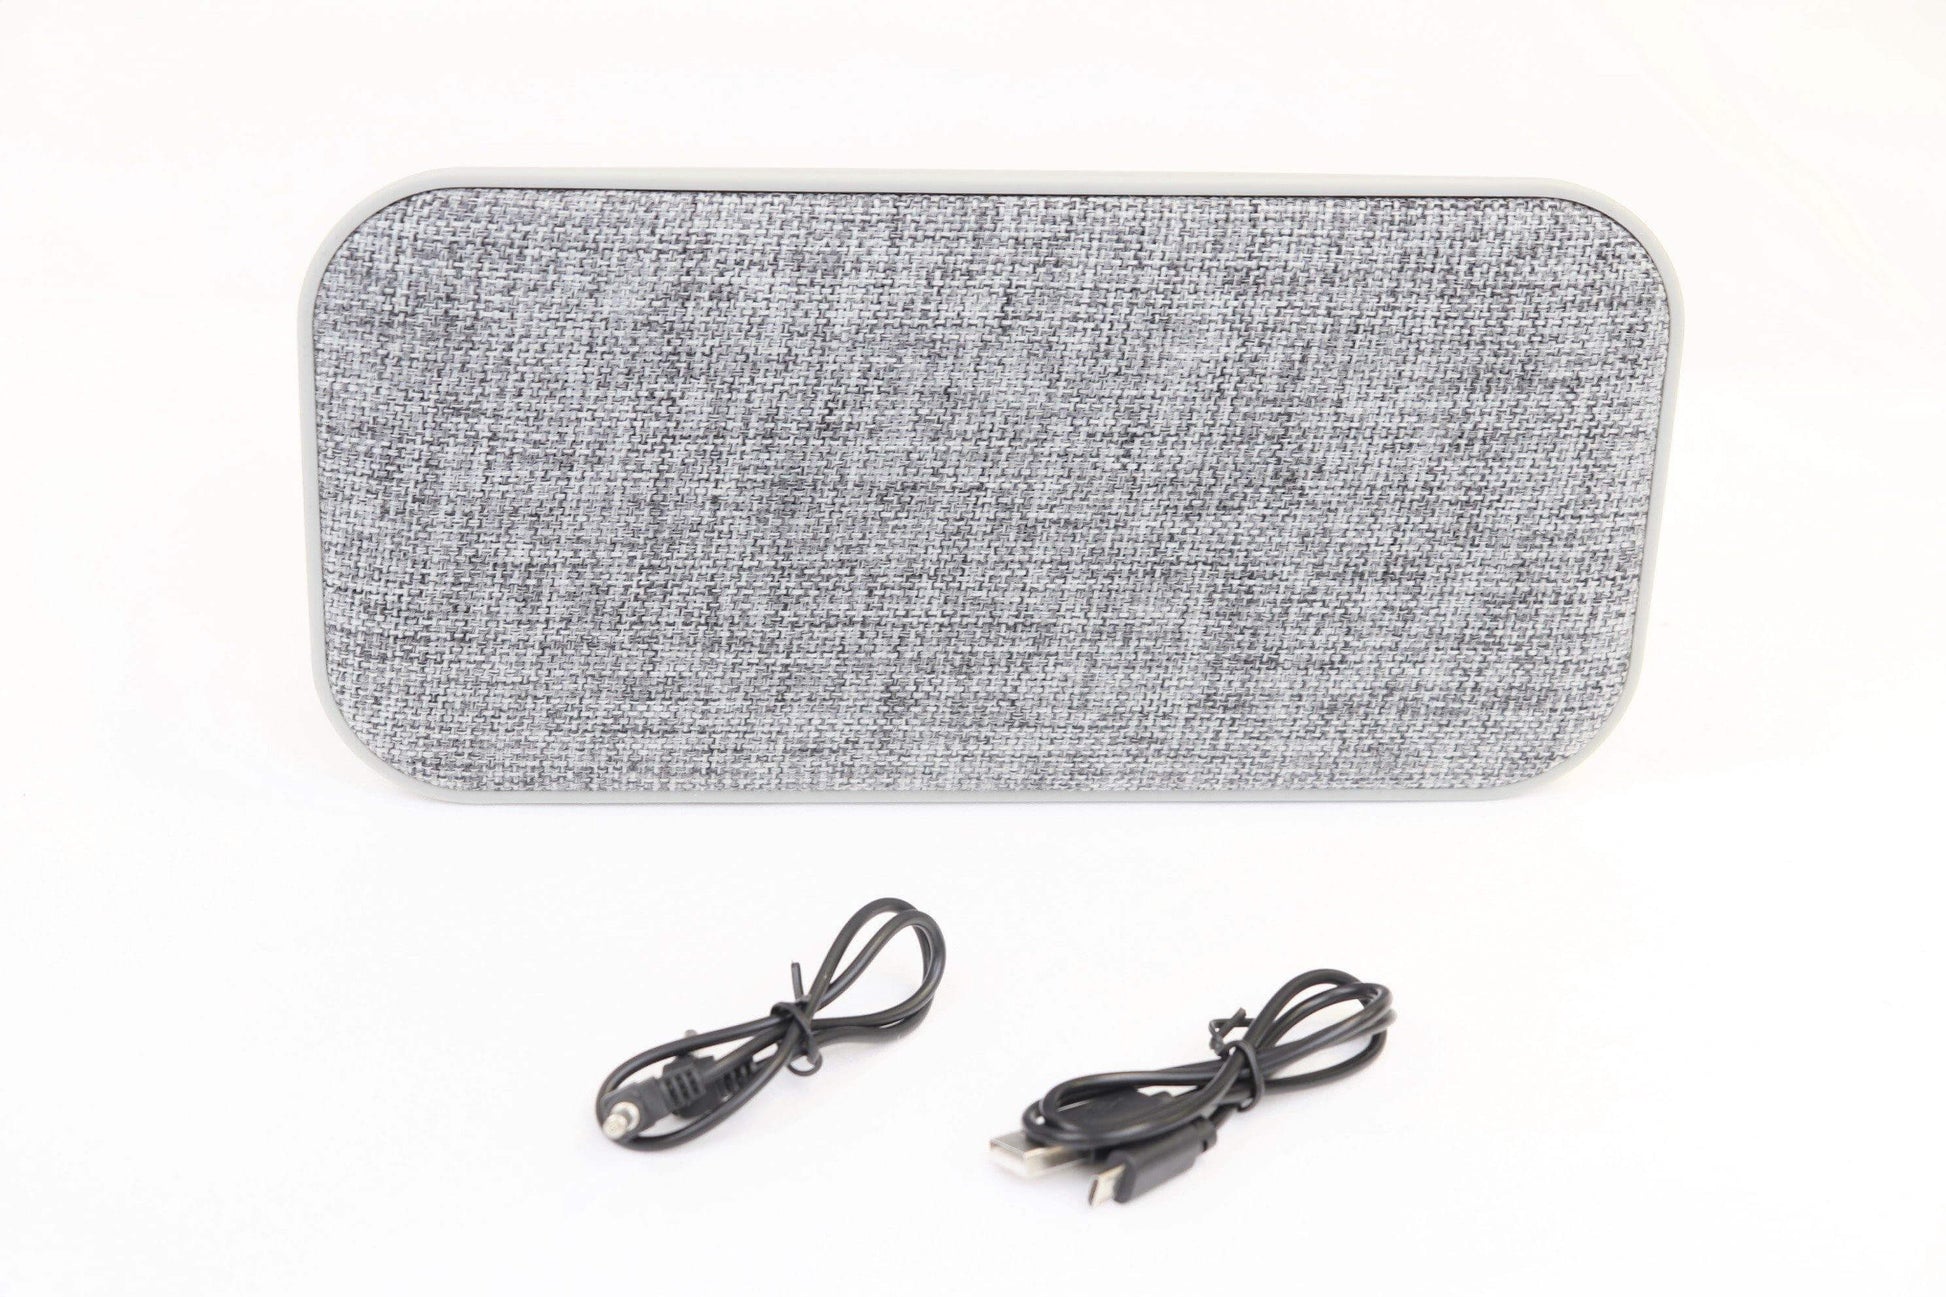 Gry Mattr 755773 Wireless Fabric Speaker - Open Box